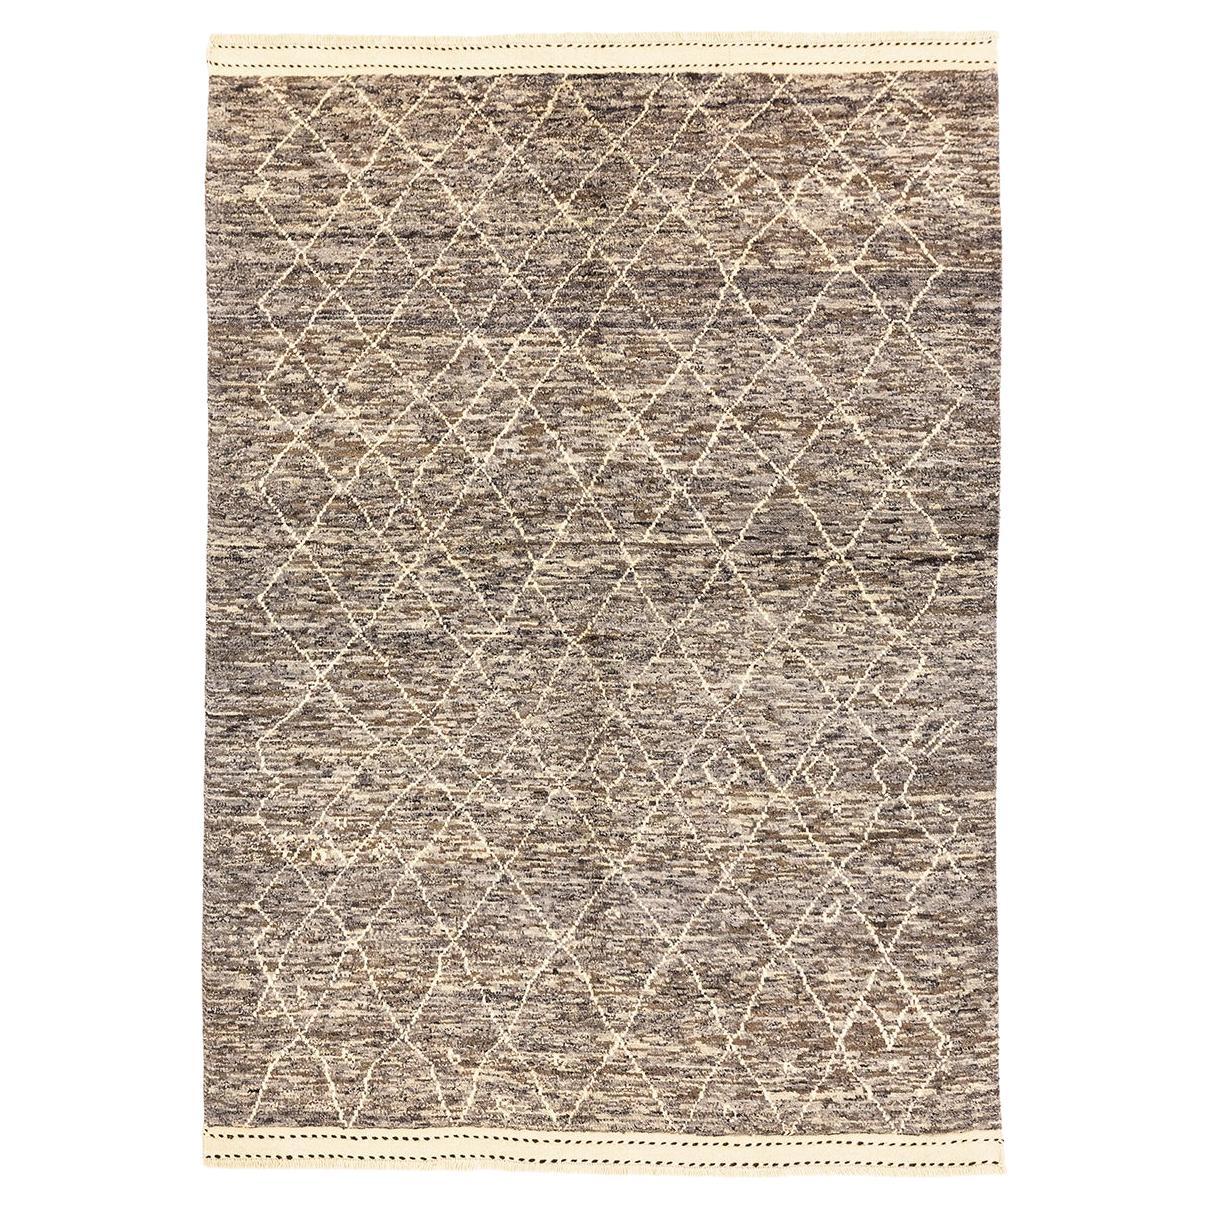 Marokkanischer Teppich Handcrafted Echte Wolle